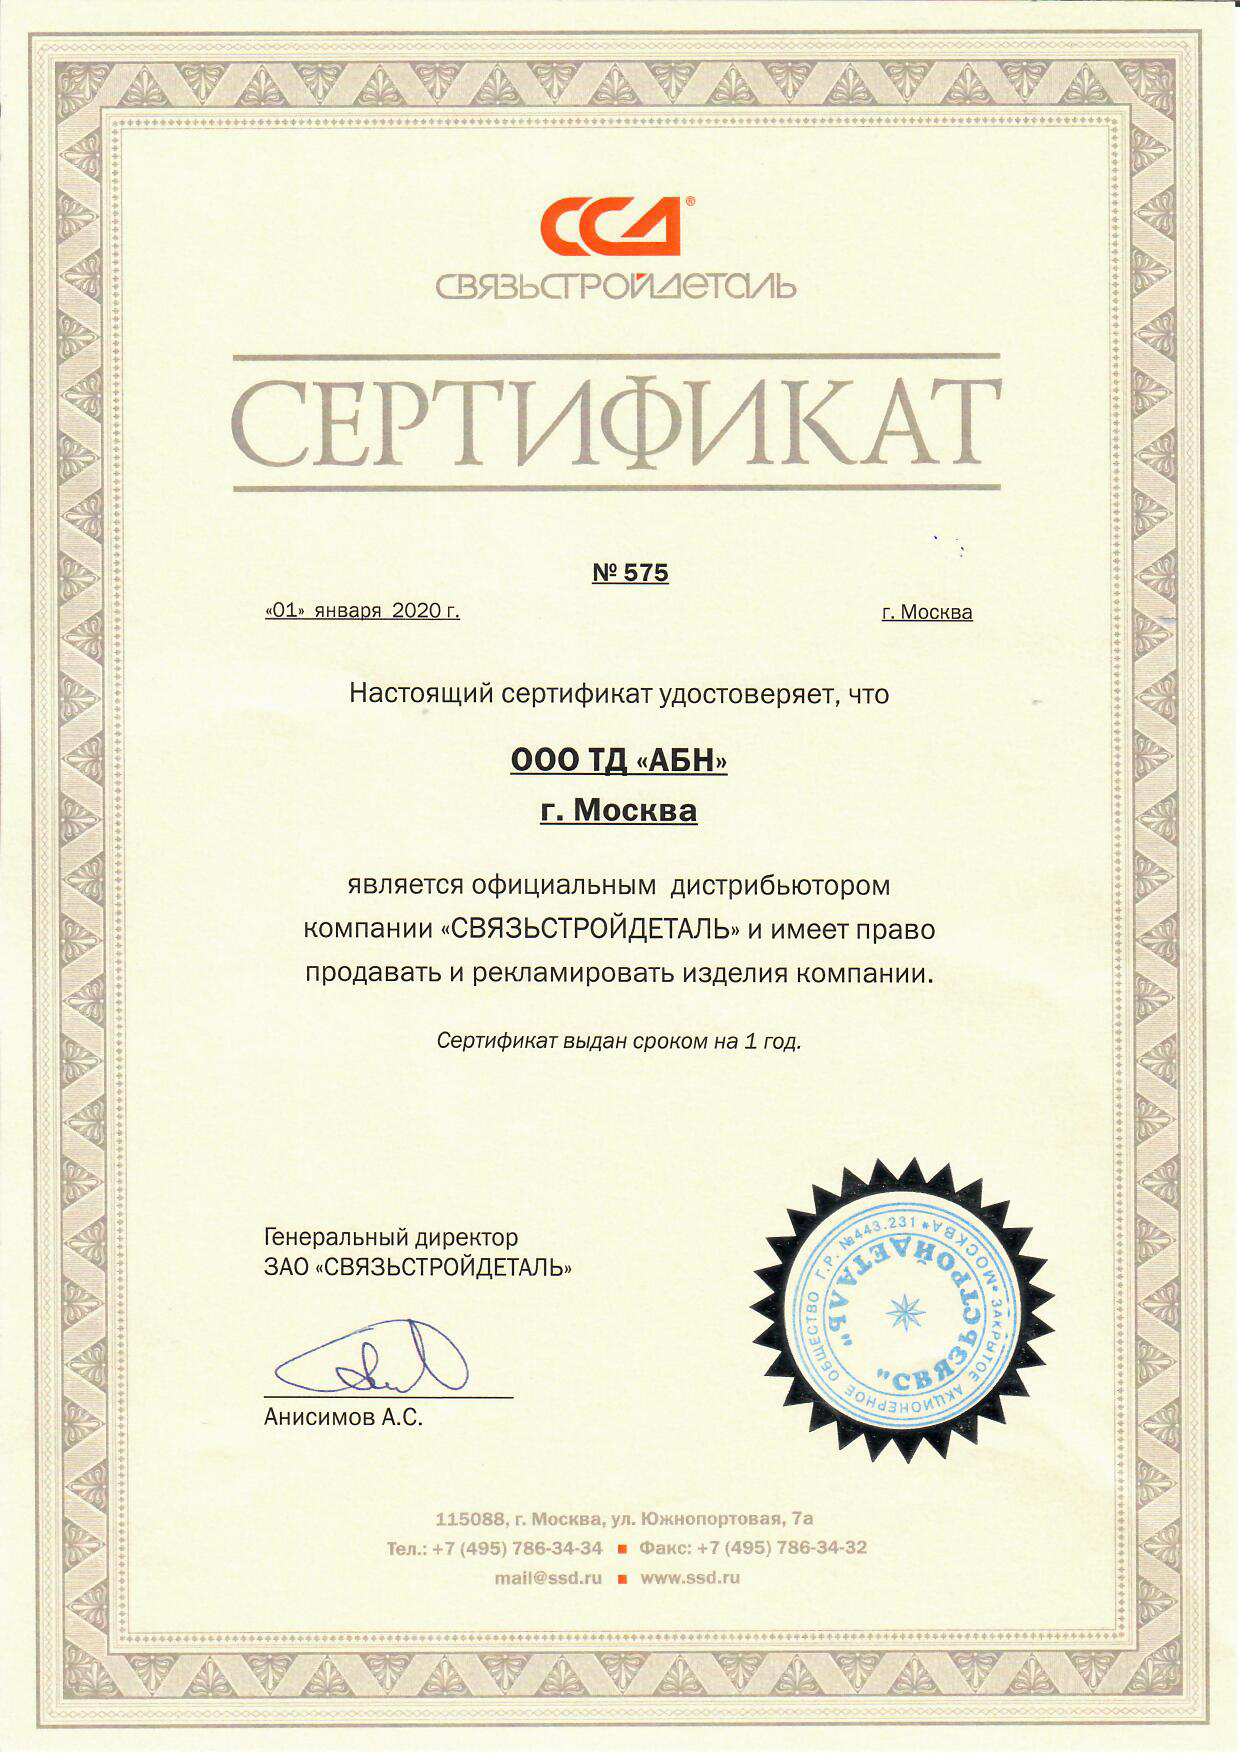 Сертификат Связьстройдеталь